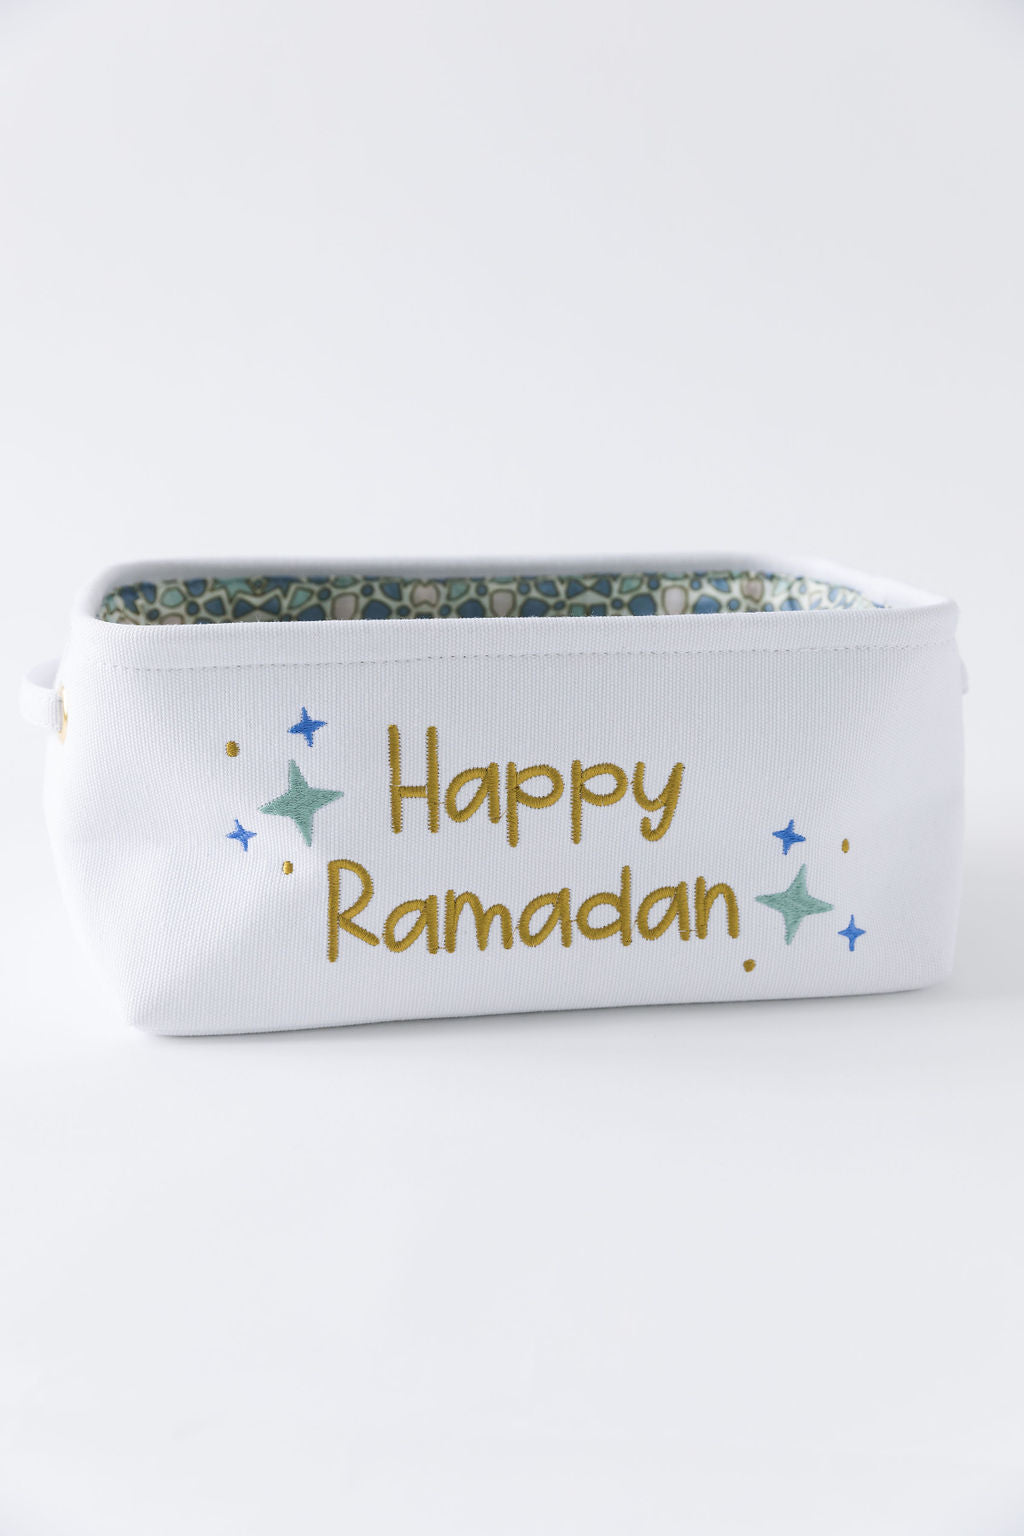 Ramadan Bundle Set